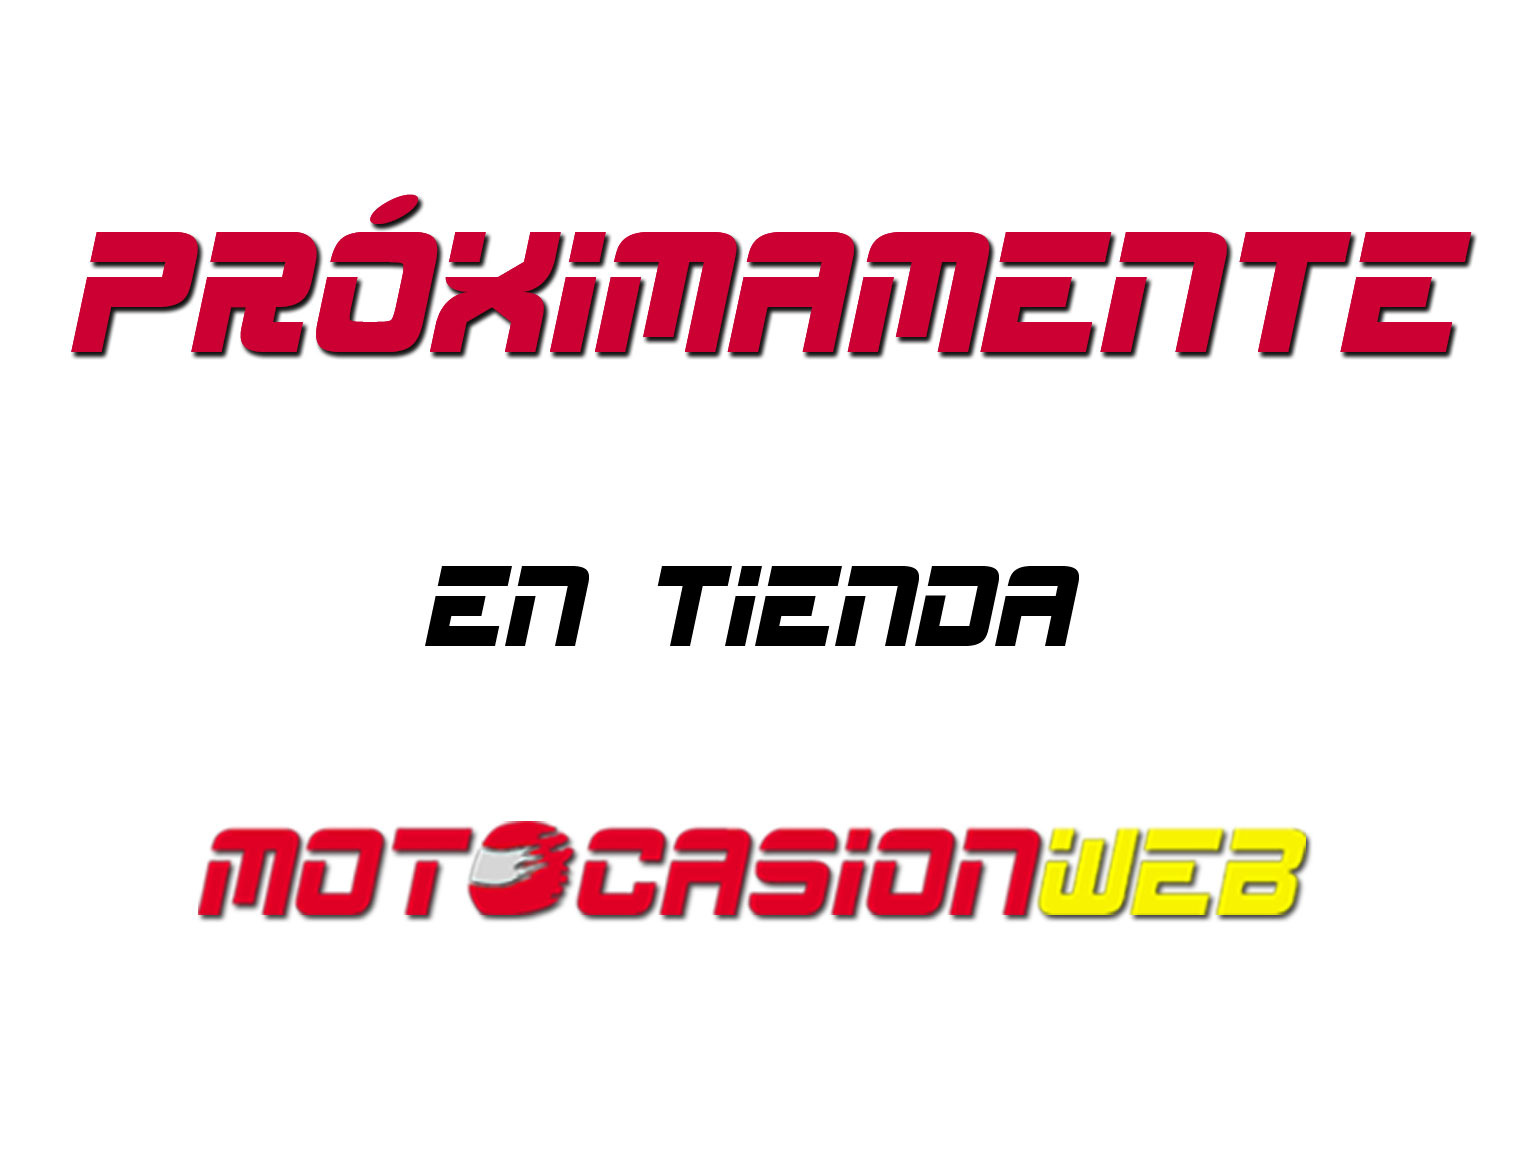 proximamente_venta_motos_ocasion_motocasionweb_valencia